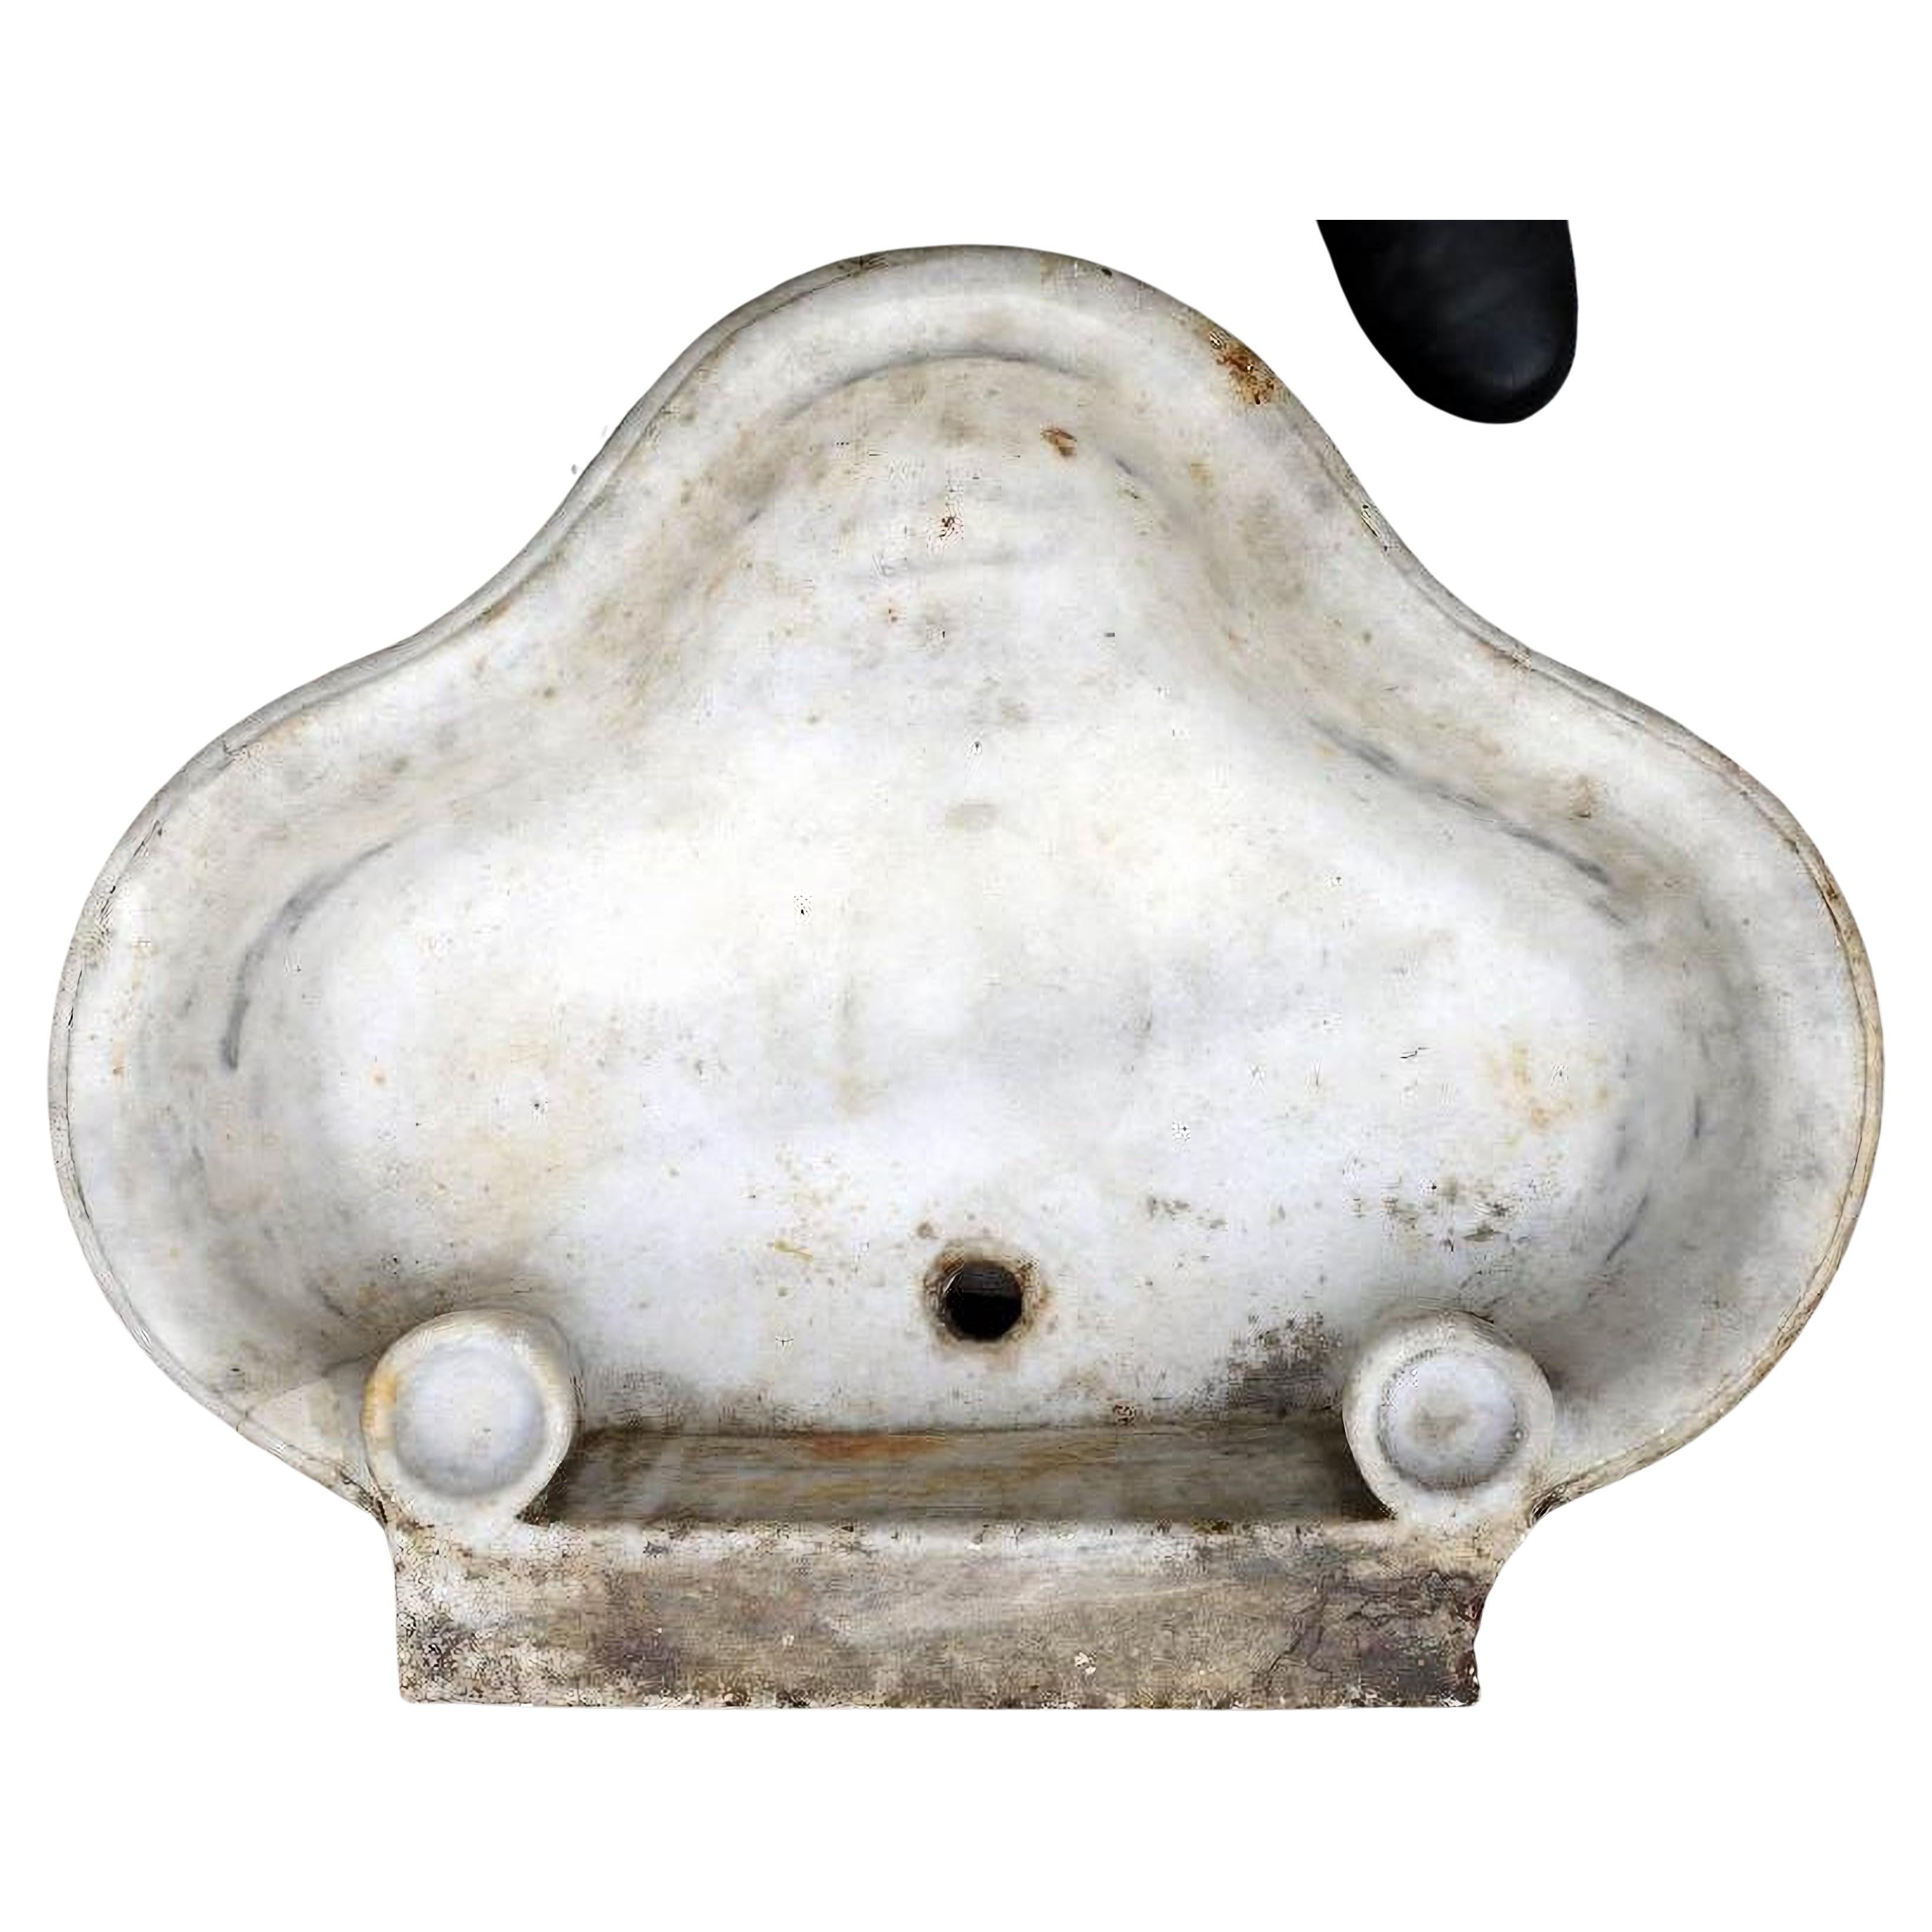 ANTIQUE italienische TRILOBE-SINK IN WEISSE CARRARA MARBLE 18. Jahrhundert

Seltenes originales antikes italienisches Waschbecken aus weißem Carrara-Marmor.
Die Kleeblatt-Spülbecken sind schwer zu finden, dieses Beispiel stammt aus dem 18.

HÖHE